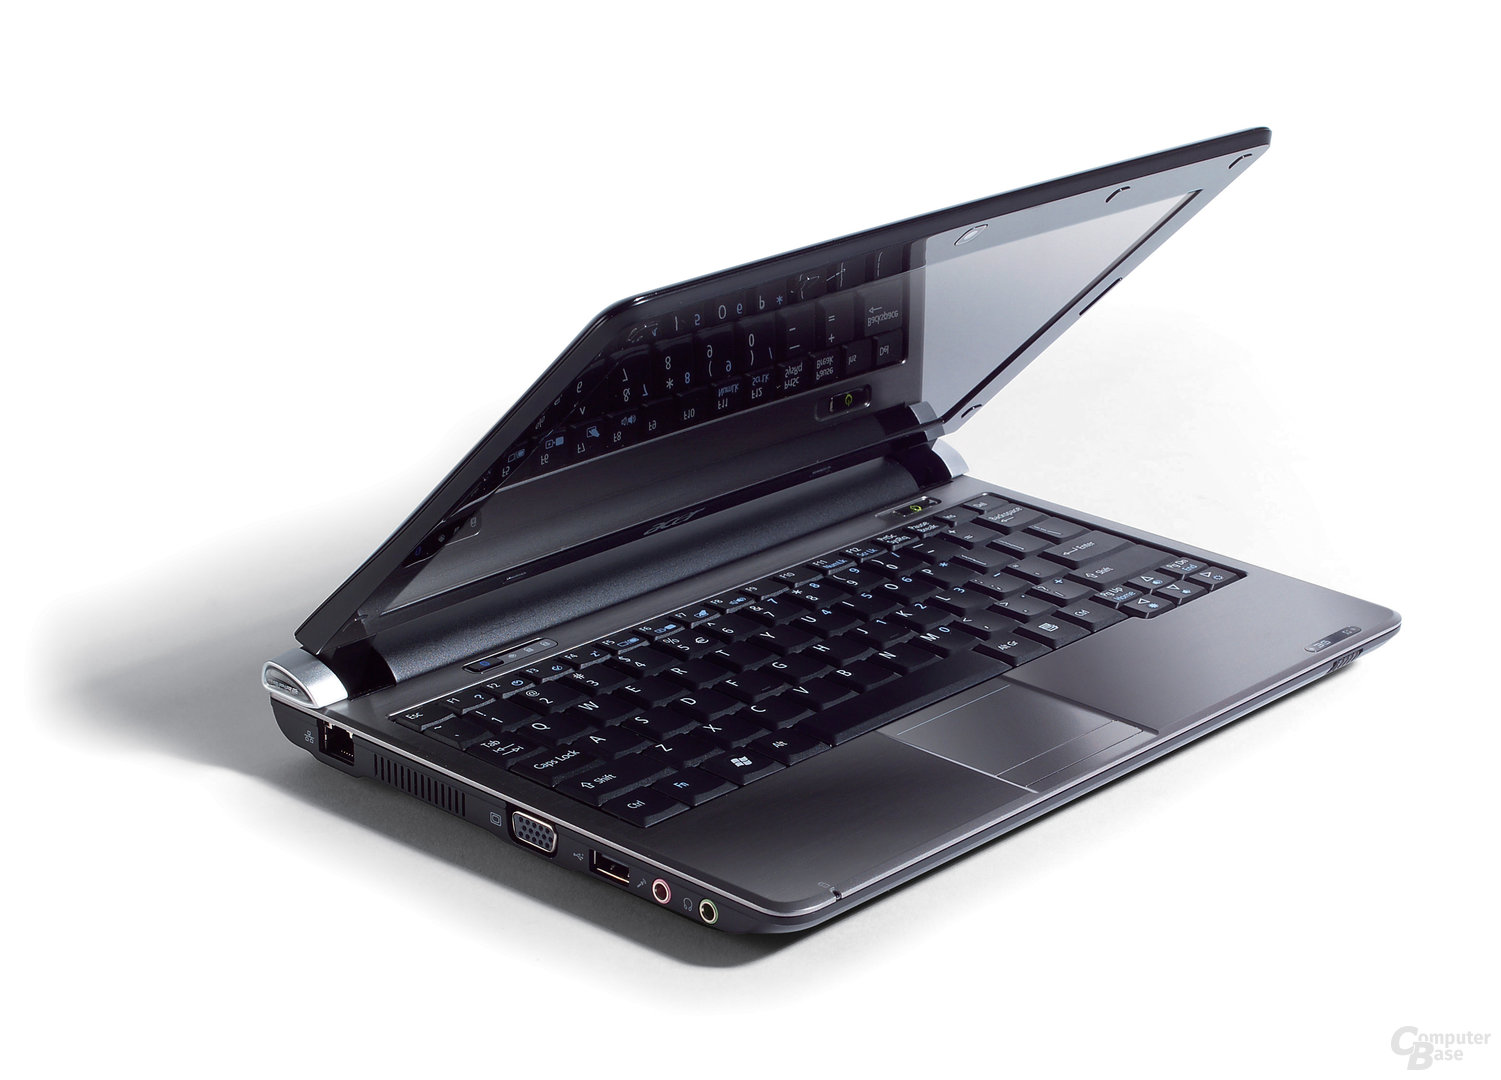 Acer Aspire one D250 in schwarz